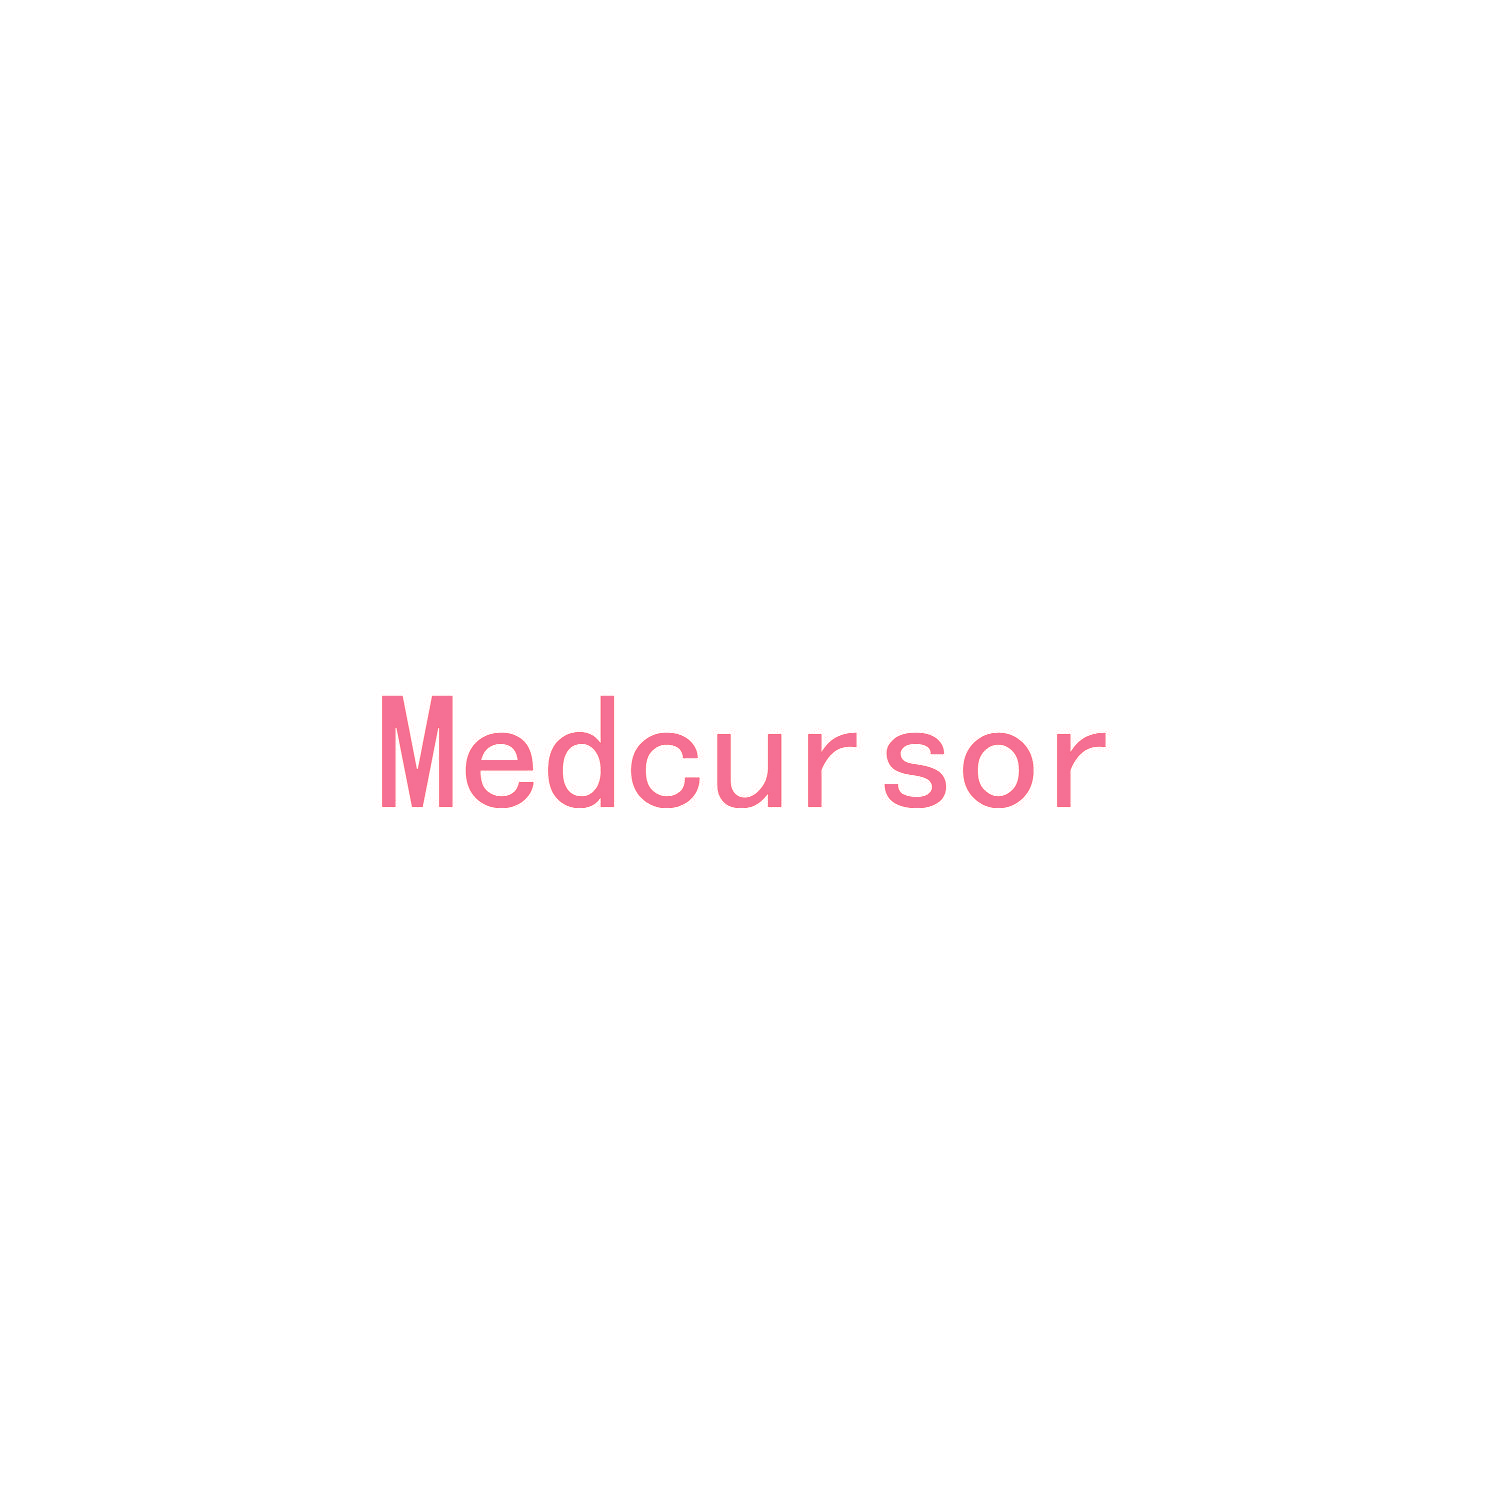 MEDCURSOR